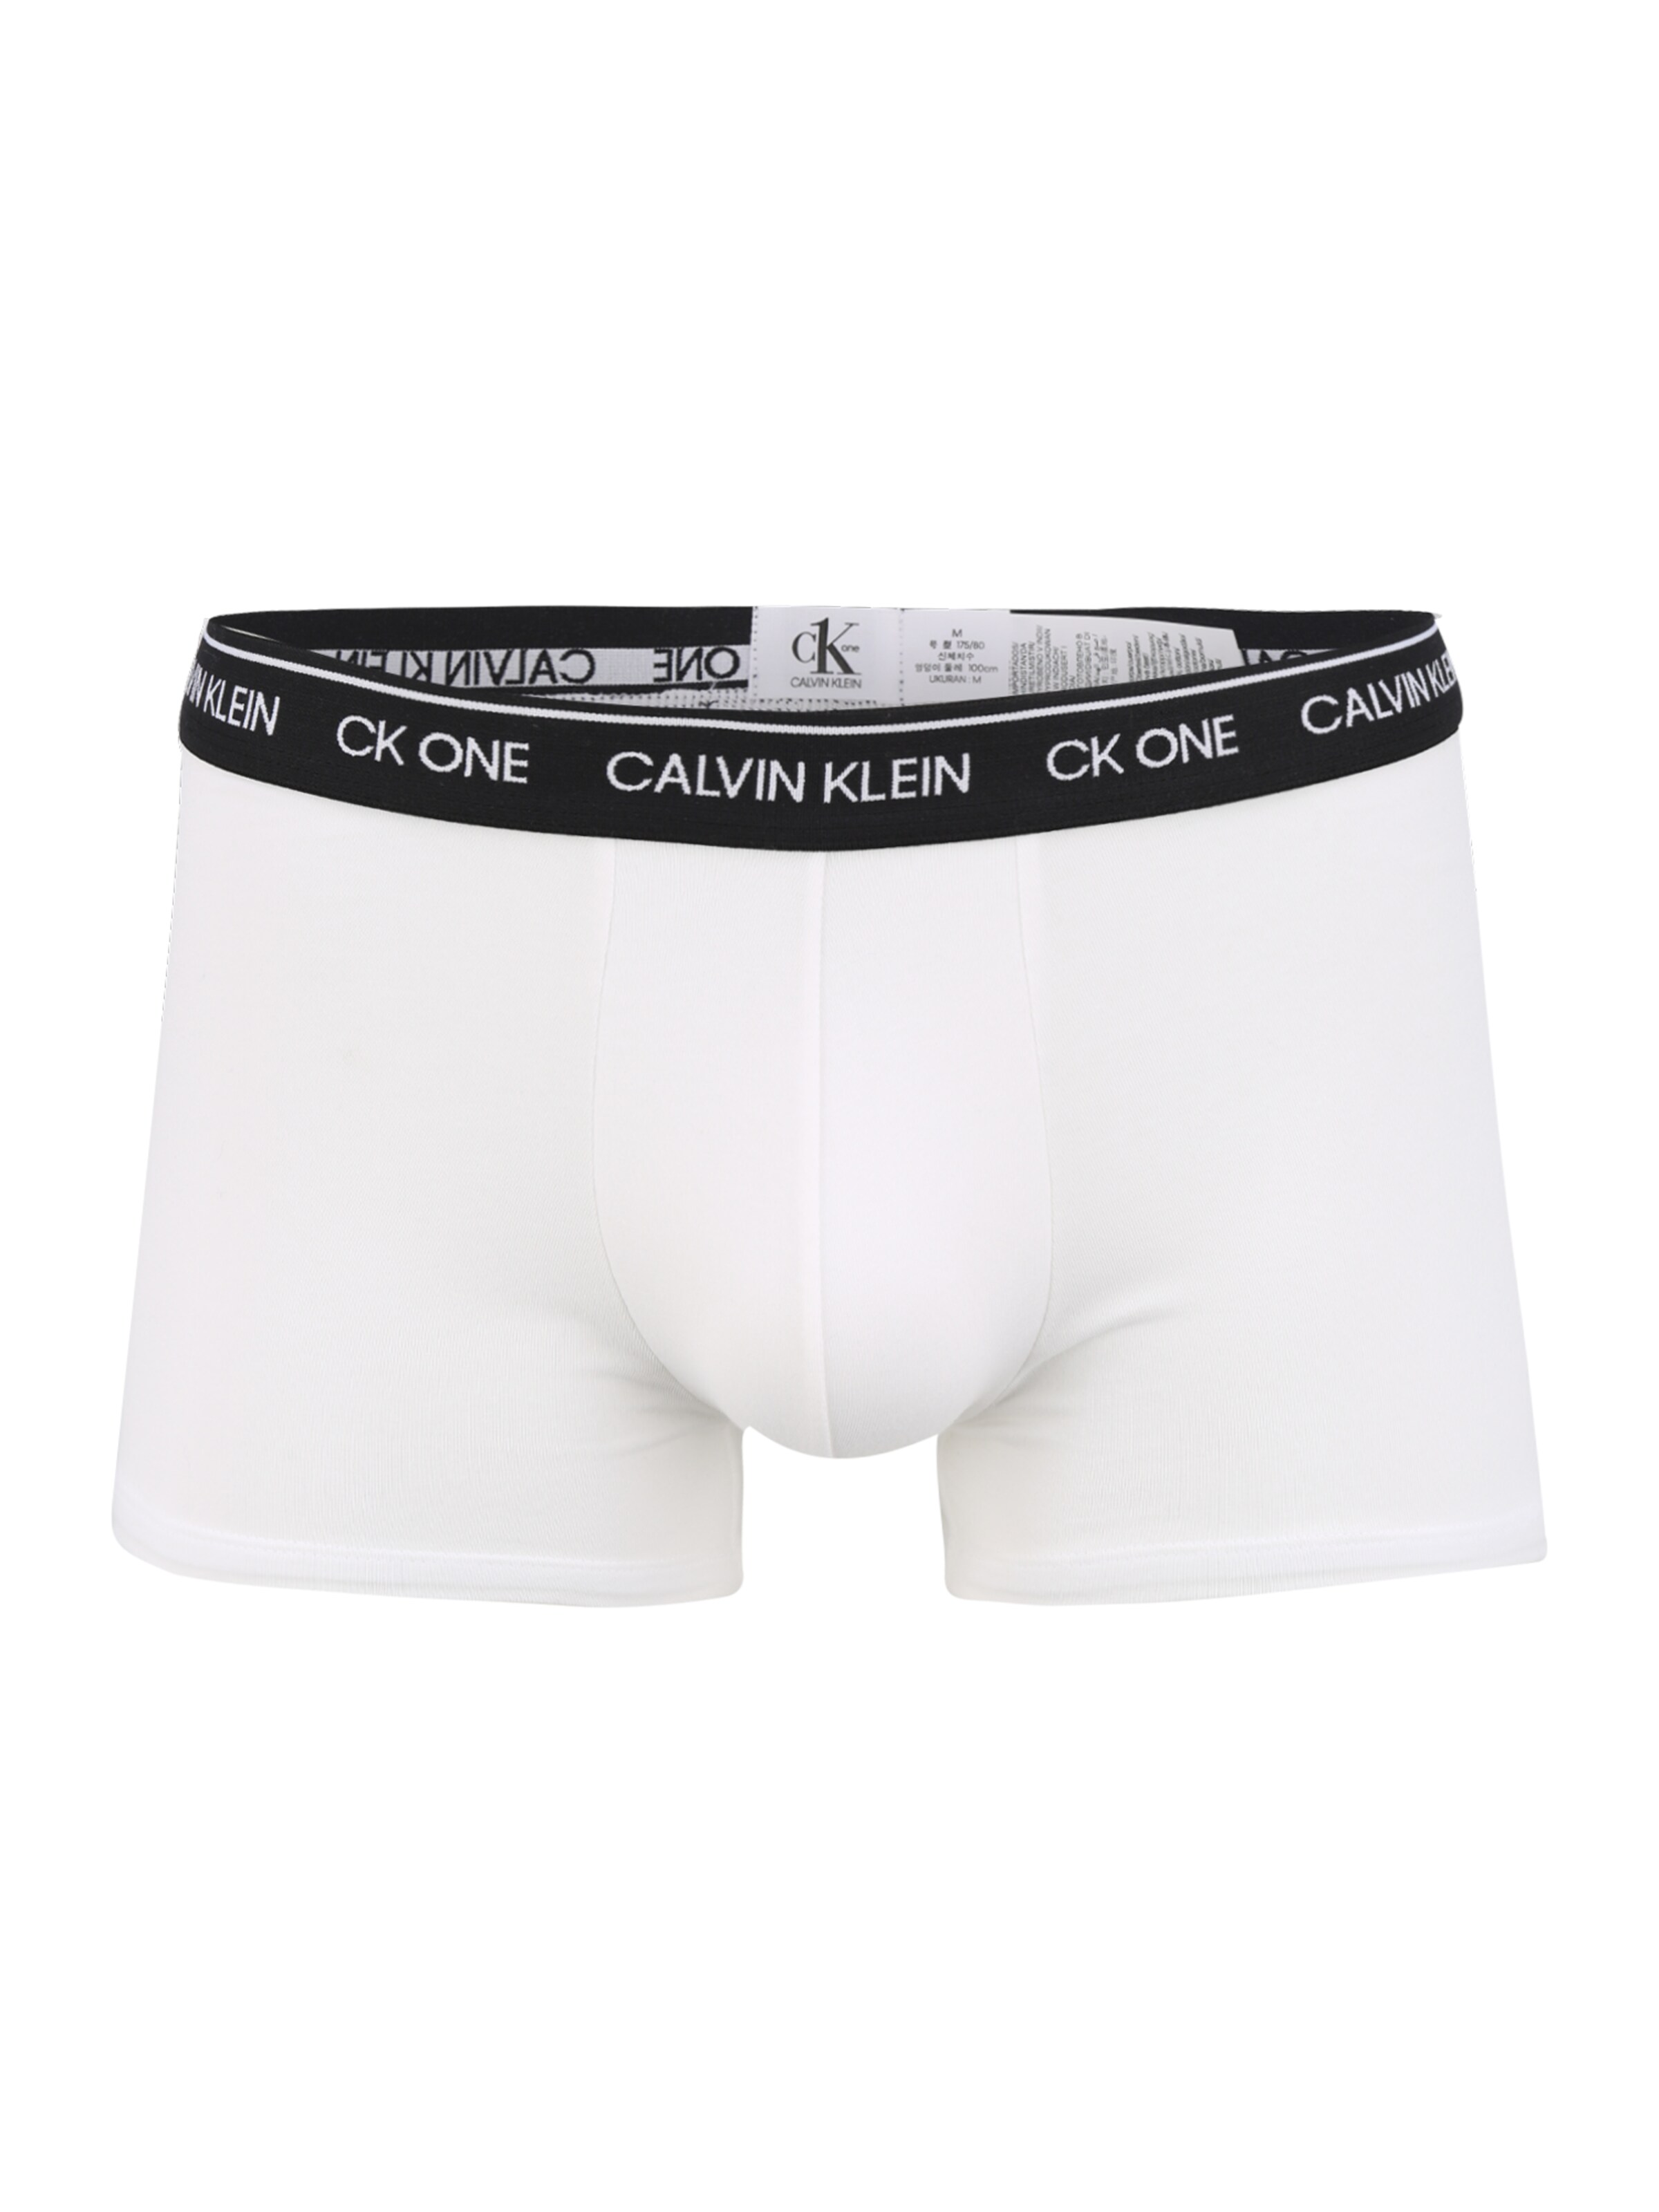 Männer Wäsche Calvin Klein Underwear Trunks in Weiß - UW62351